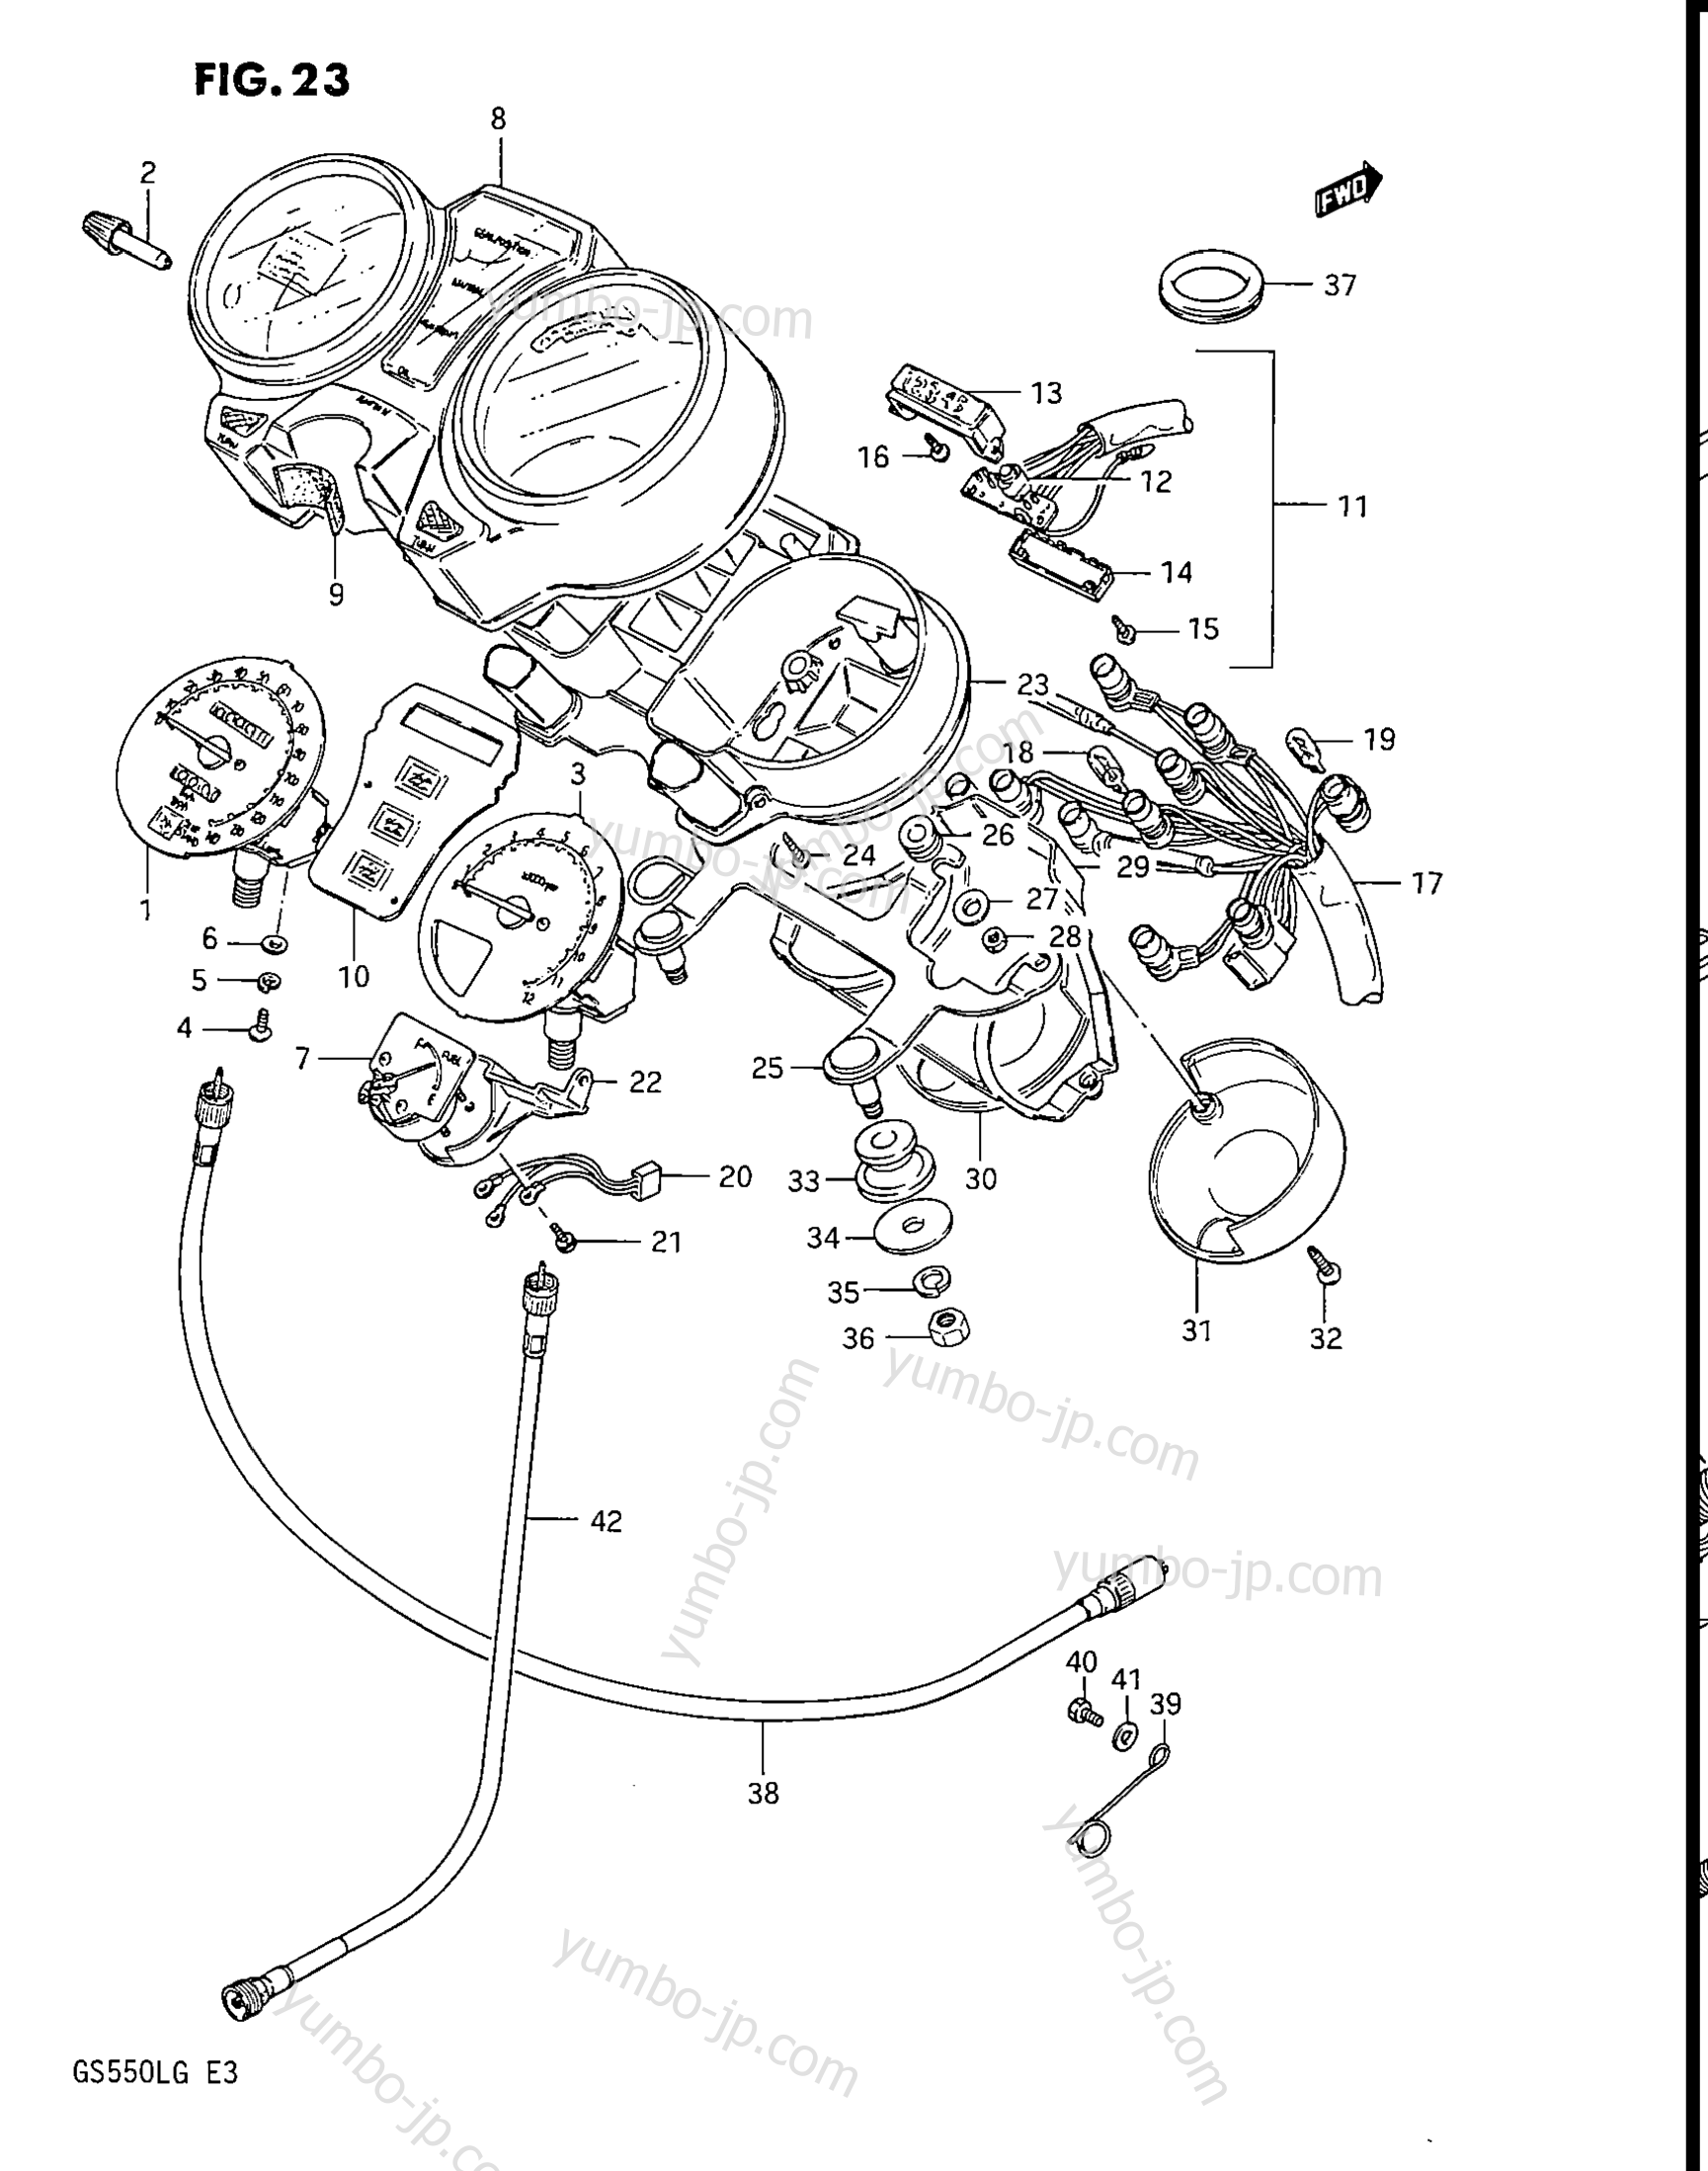 Speedometer - Tachometer for motorcycles SUZUKI GS550L 1986 year